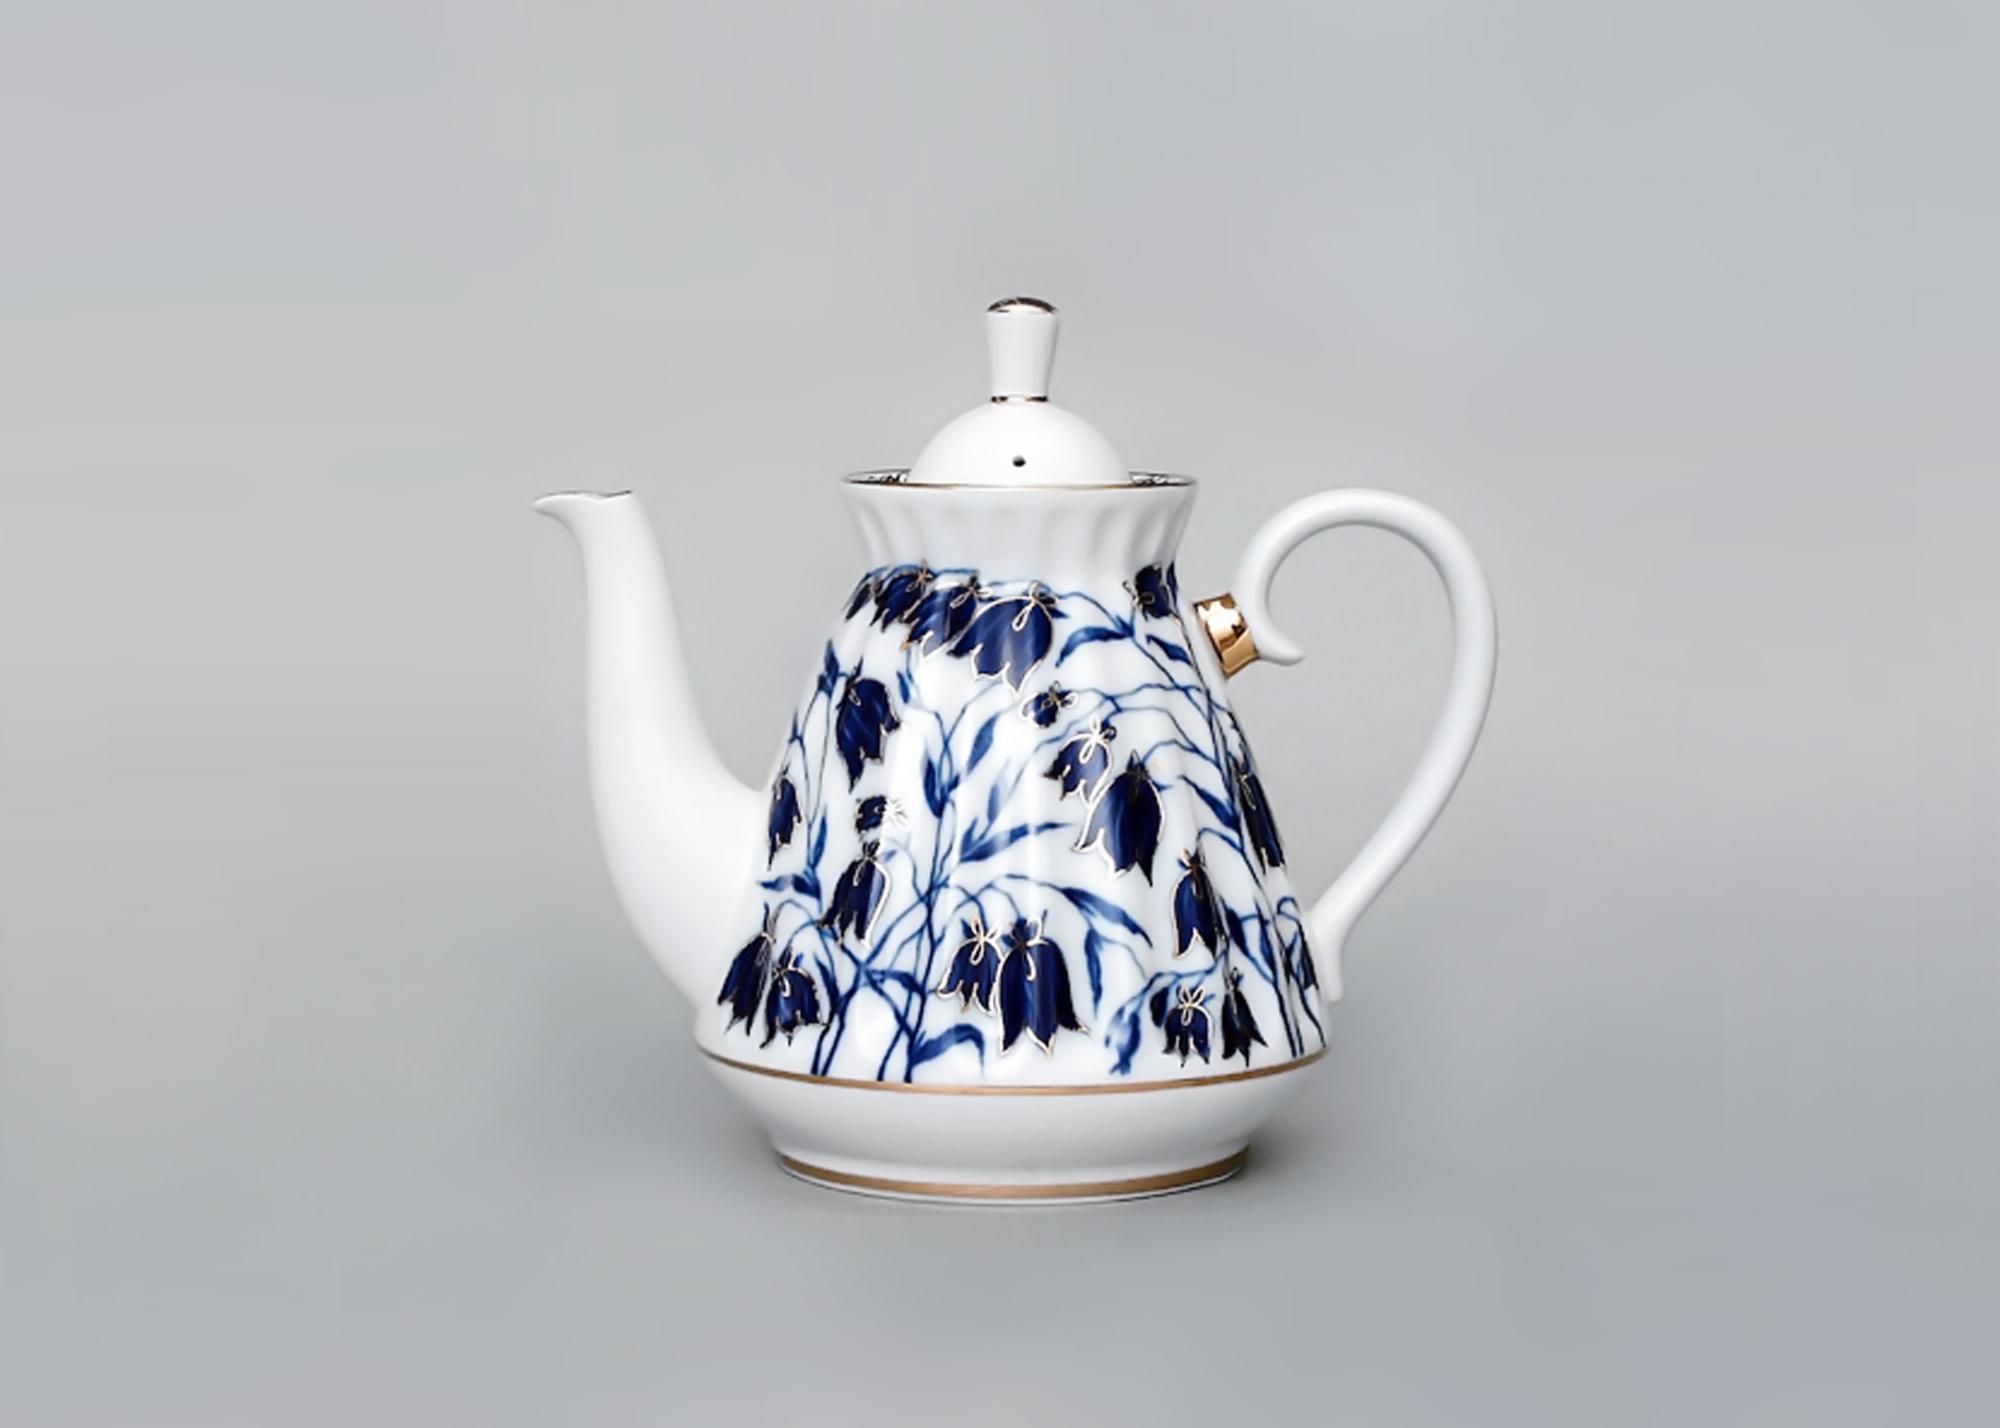 Buy Blue Bells Teapot, 3 cup at GoldenCockerel.com